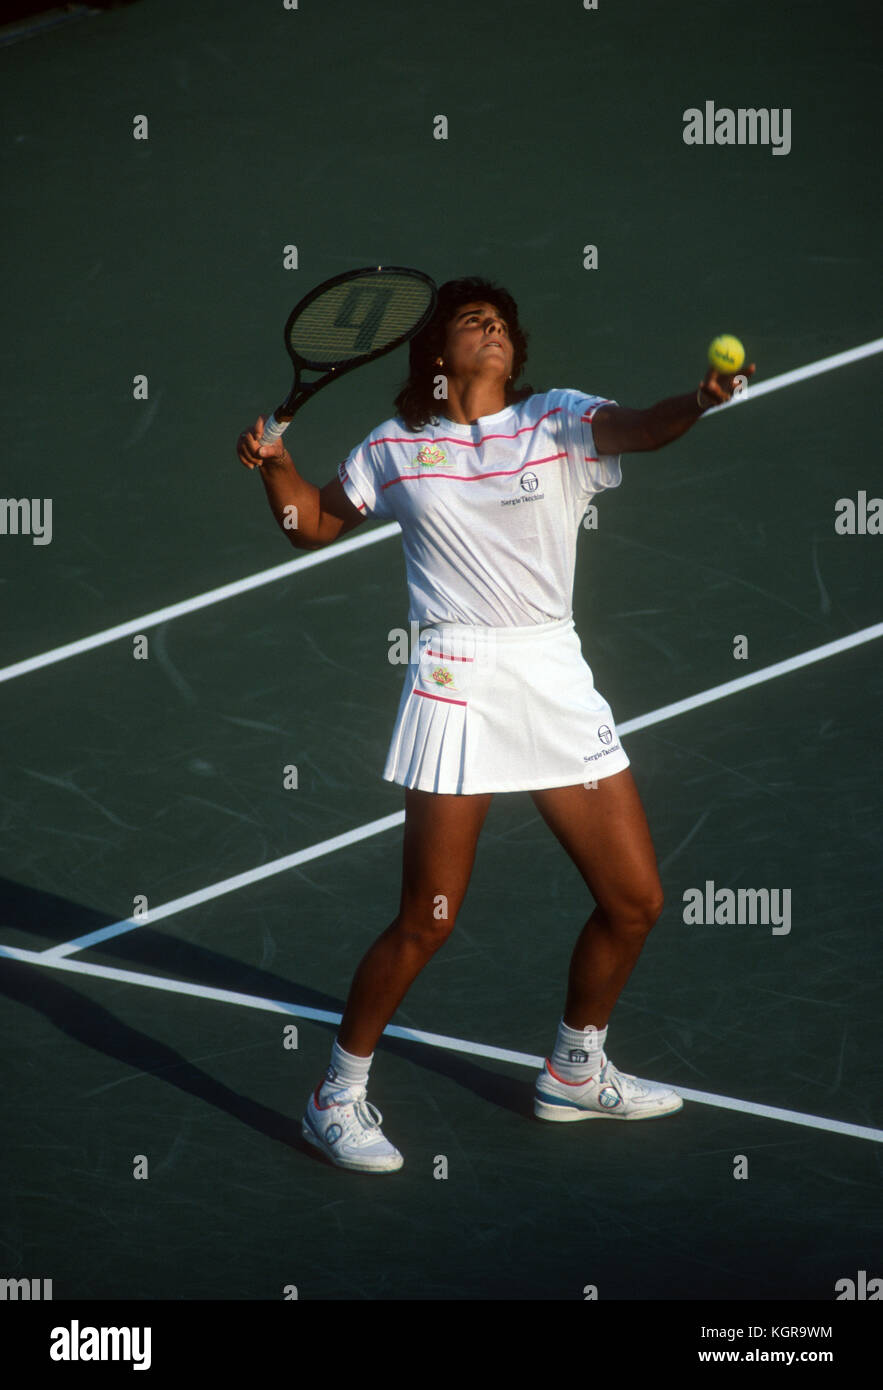 Gabriela Sabatini die Vorbereitung während des Spiels an der 1990 US Open zu dienen Stockfoto